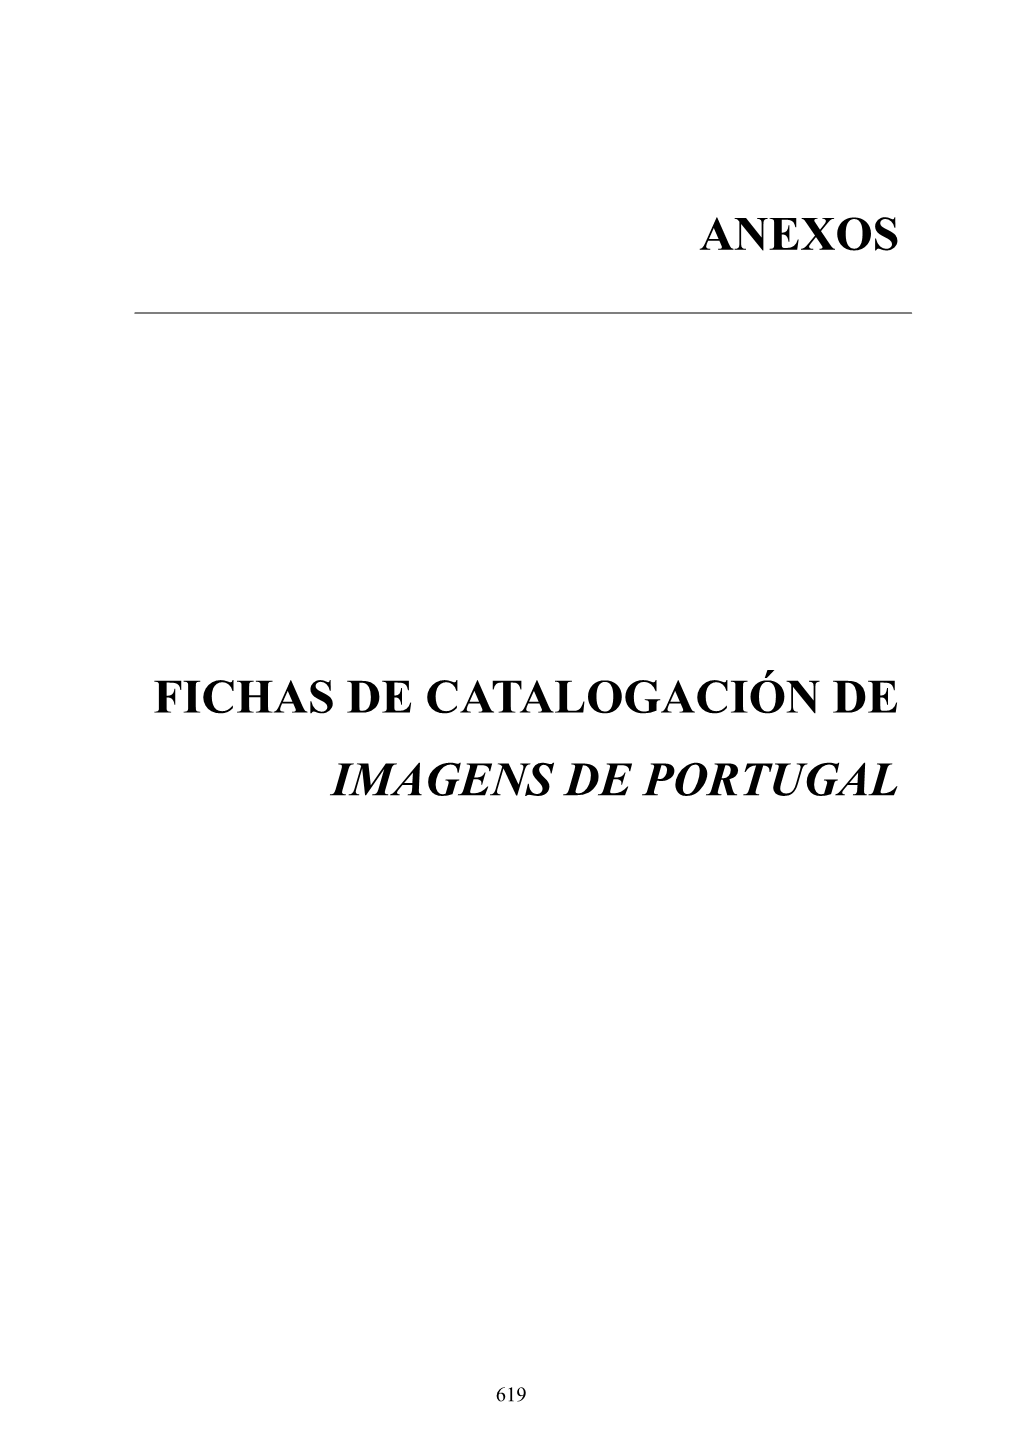 Anexos Fichas De Catalogación De Imagens De